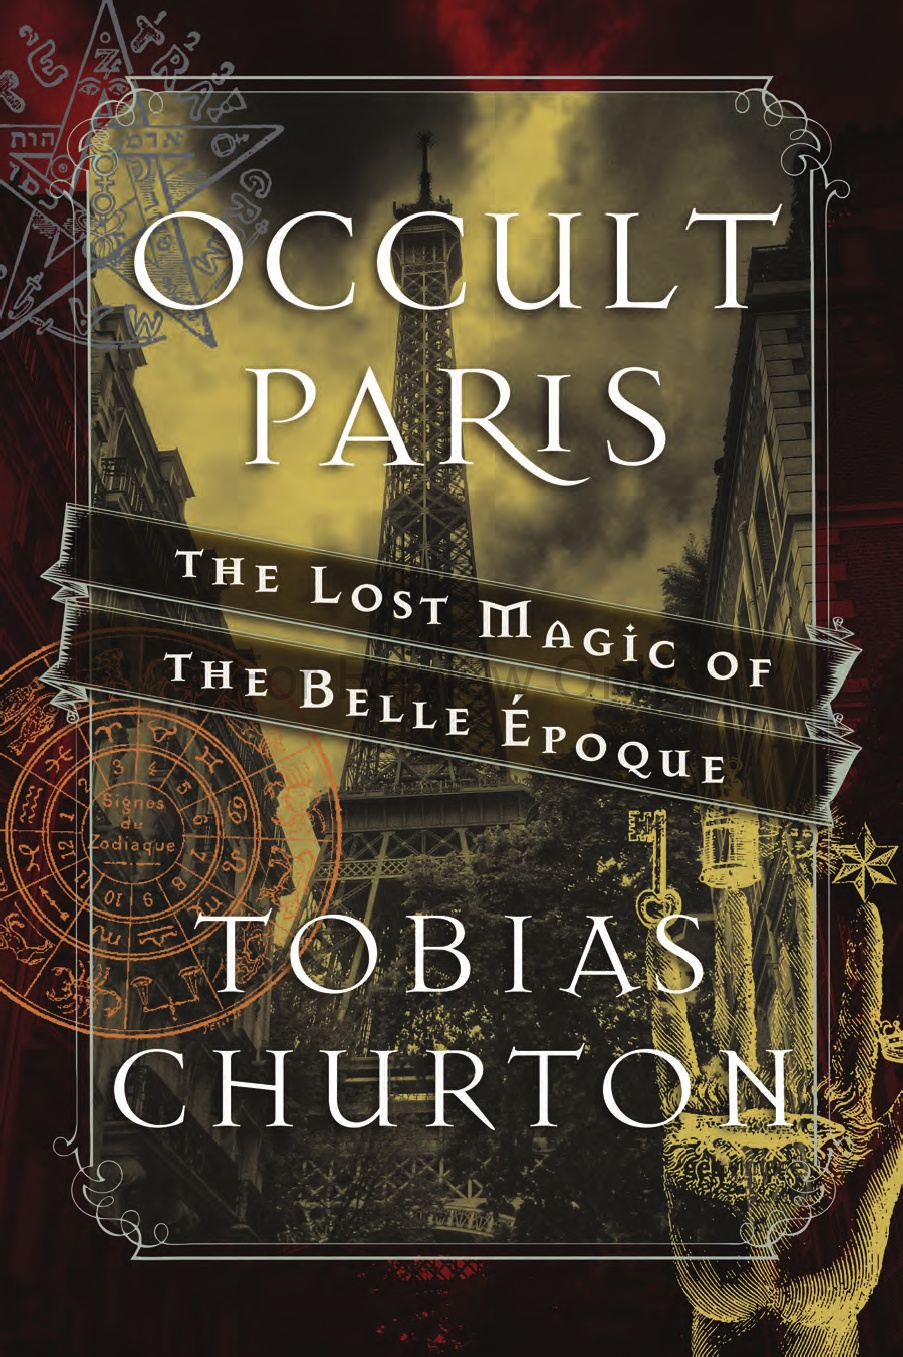 OCCULT PARIS book cover